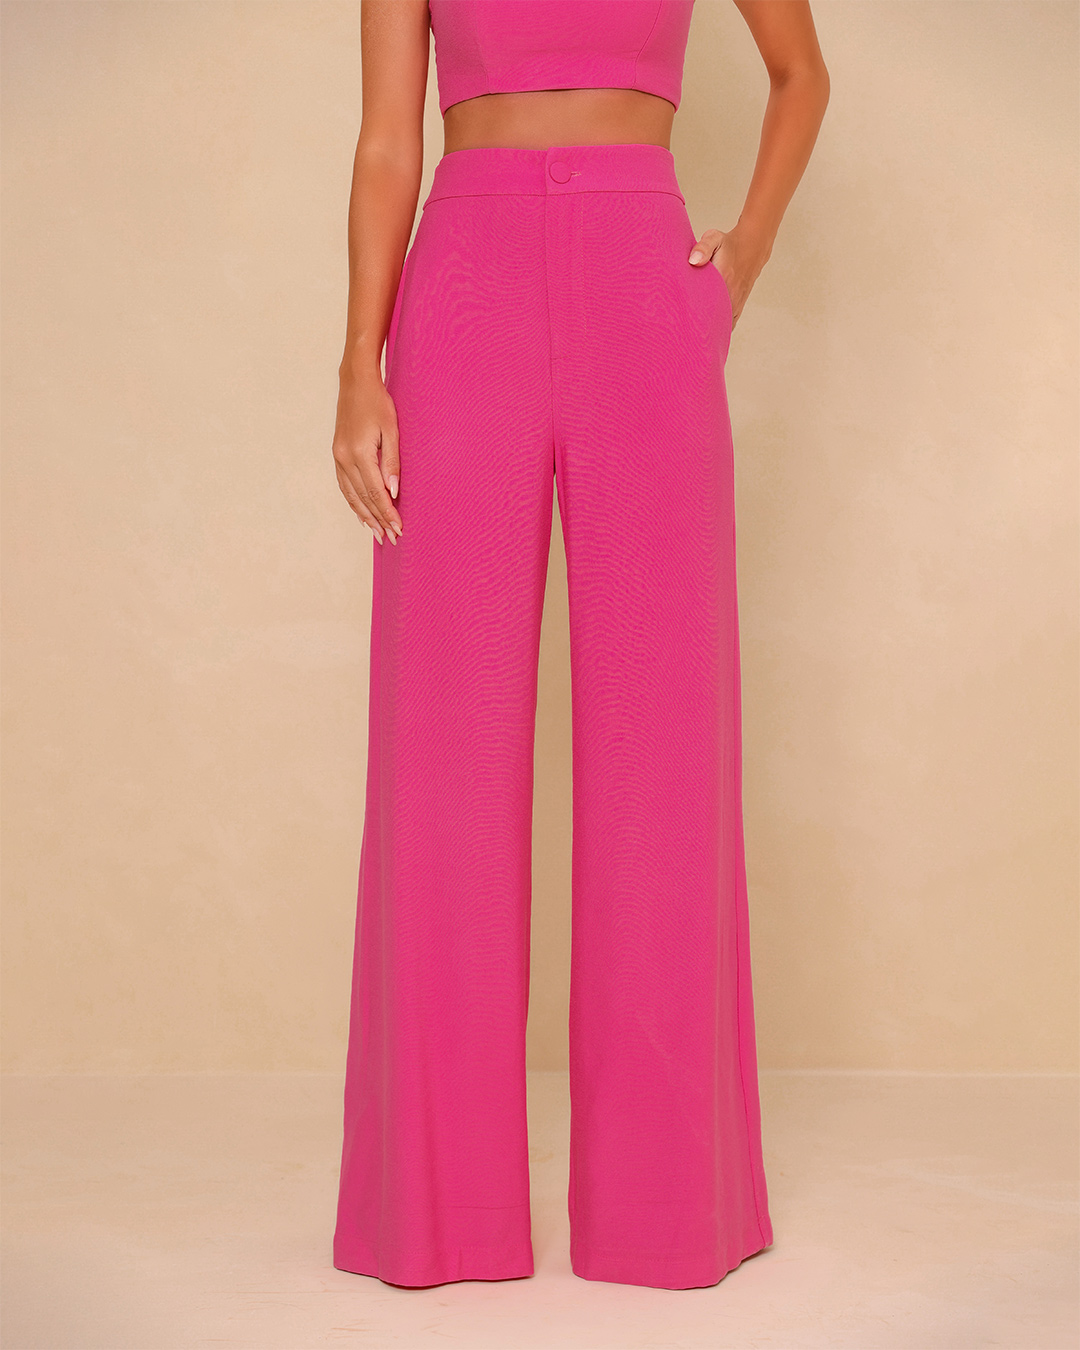 Dot Clothing - Set Dot Clothing Pantalona and Cropped Pink - 1834ROSA